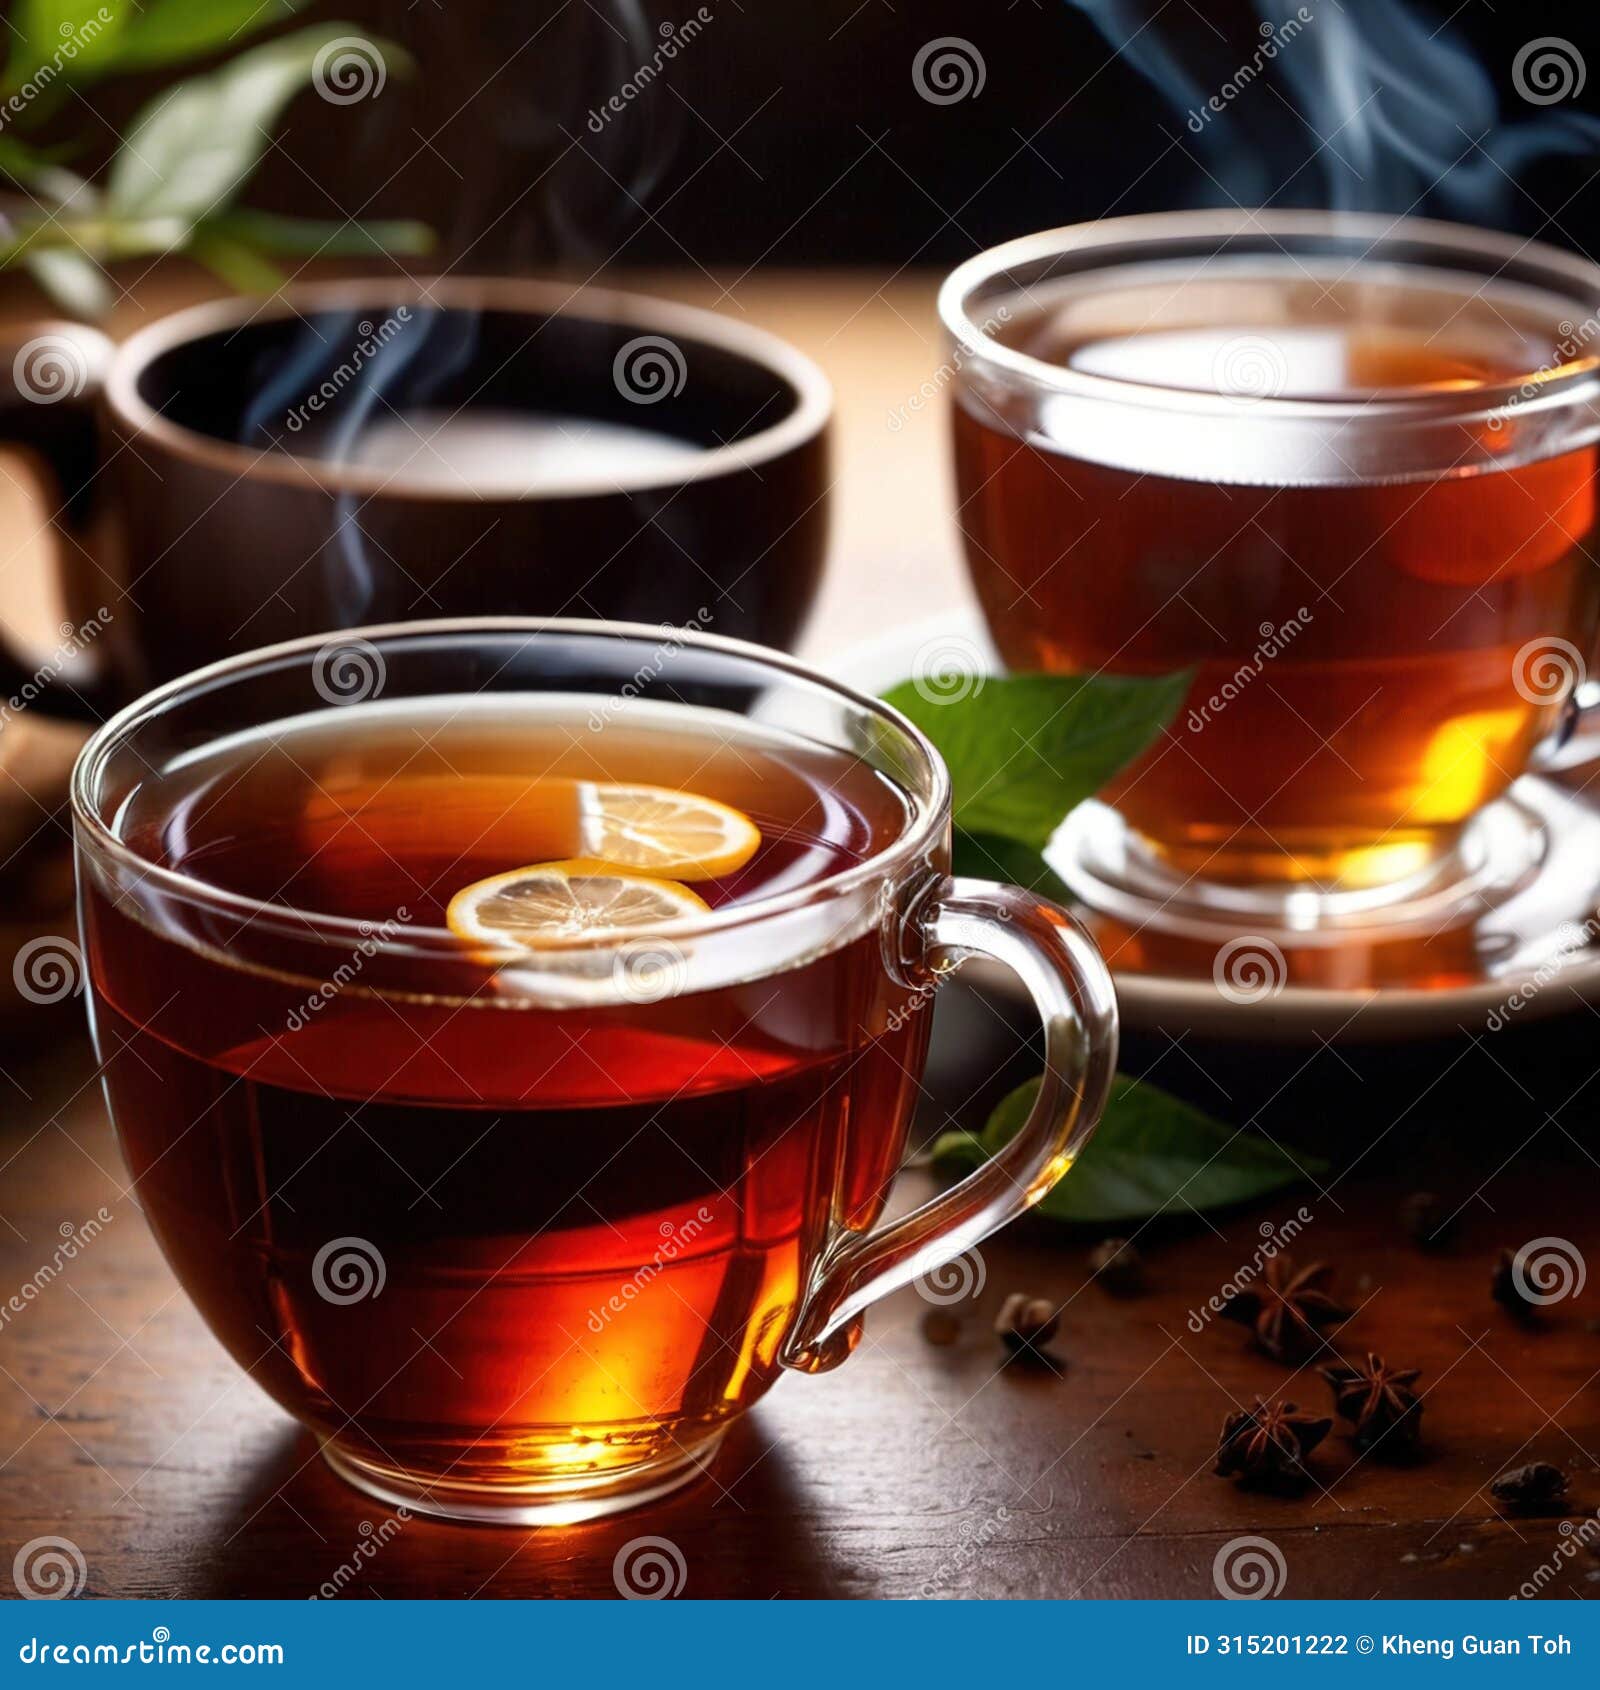 tea, fresh brewed black tea in cup with tea leaves